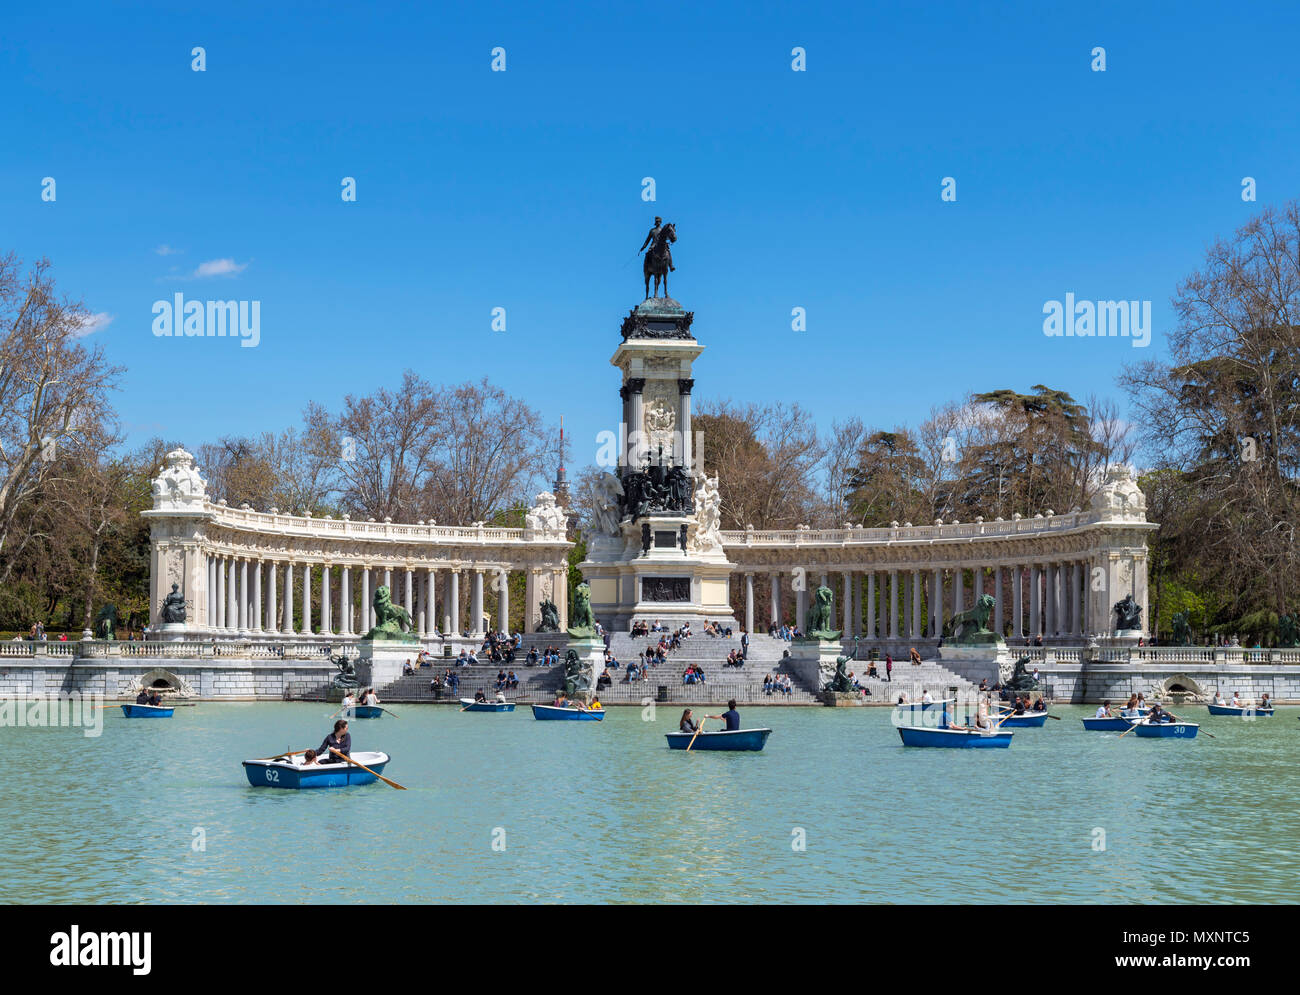 Madrid, El Retiro Park. Il canottaggio sulla Grande Estanque del Retiro con Alfonso XII monumento dietro, Parque del Buen Retiro, Madrid, Spagna. Foto Stock